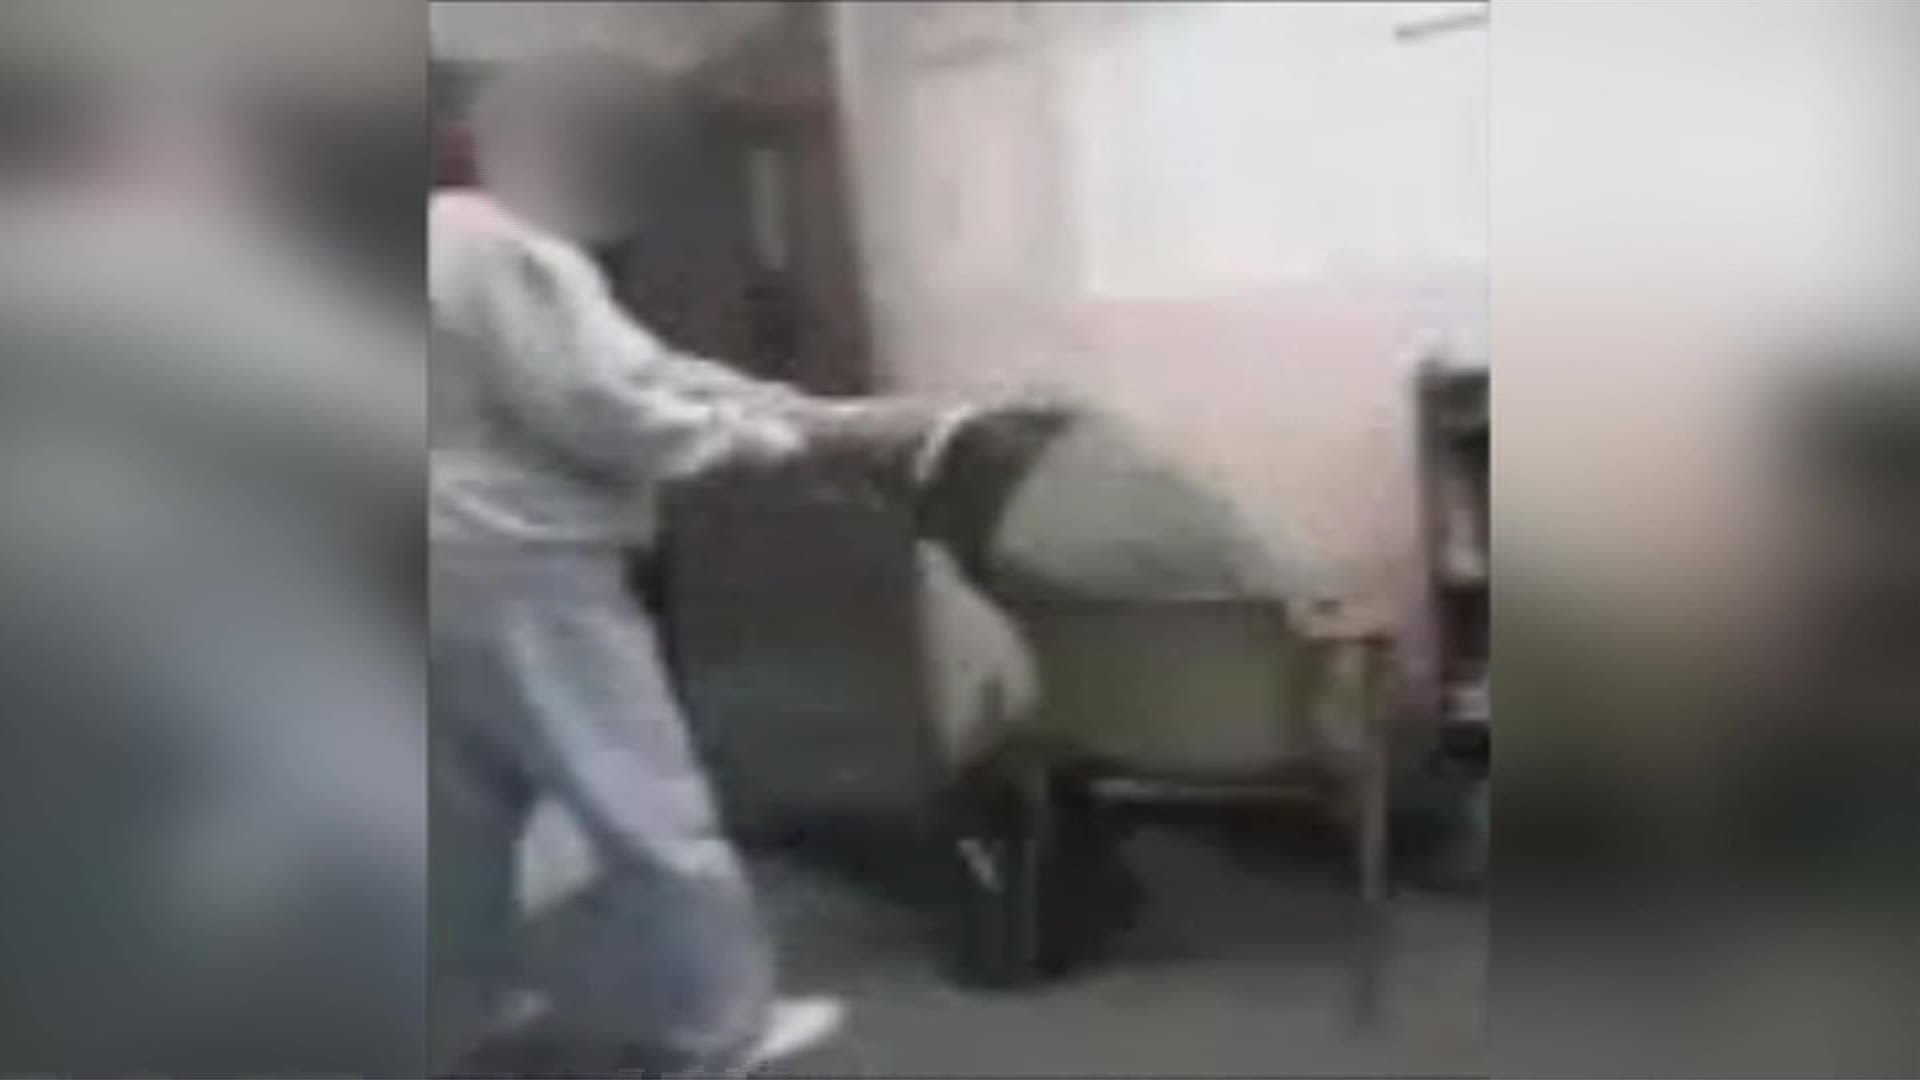 Real Teacher Hidden Cam Sex - Teacher seen on camera dragging student by hoodie | CNN